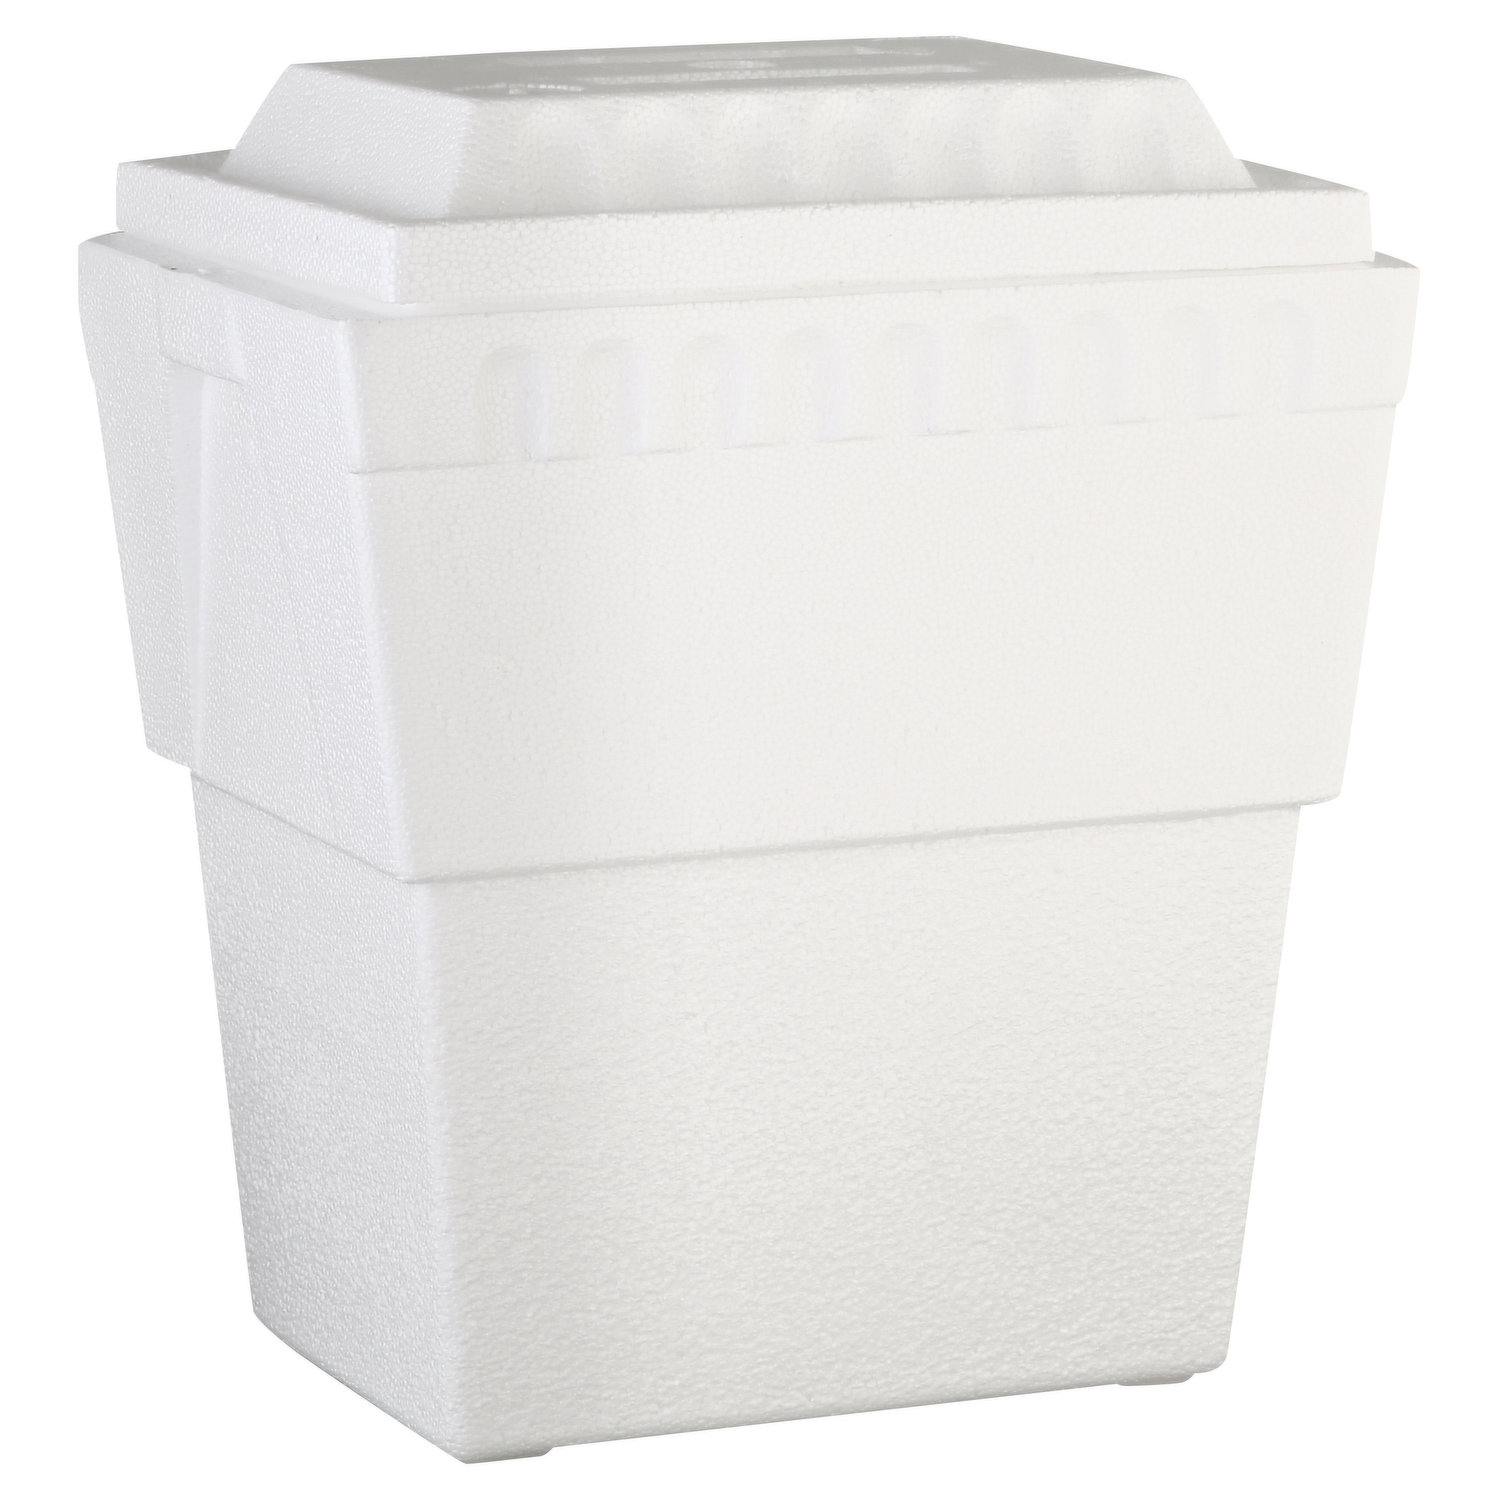 Buy Lifoam Styrofoam Cooler 40 Qt., White (Pack of 12)